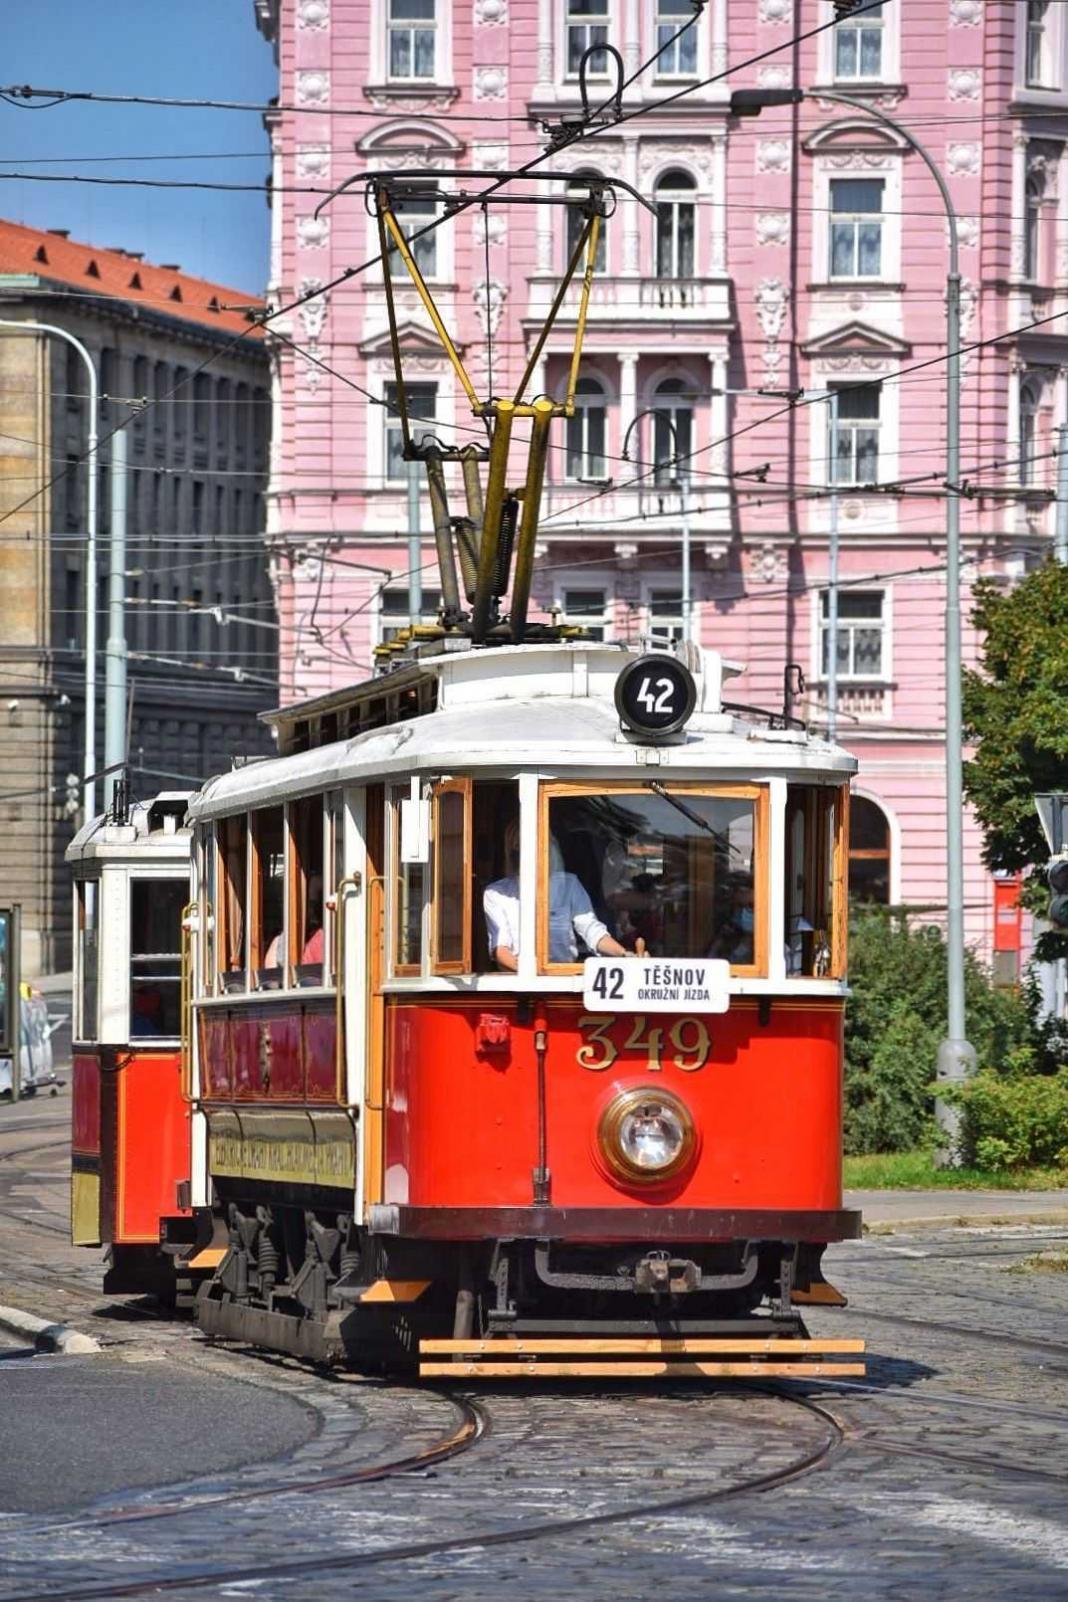 Lanciata quest'estate come parte di un progetto più grande, la linea 42 del tram storico diventerà un mezzo fisso per il trasporto sostenibile dei turisti.